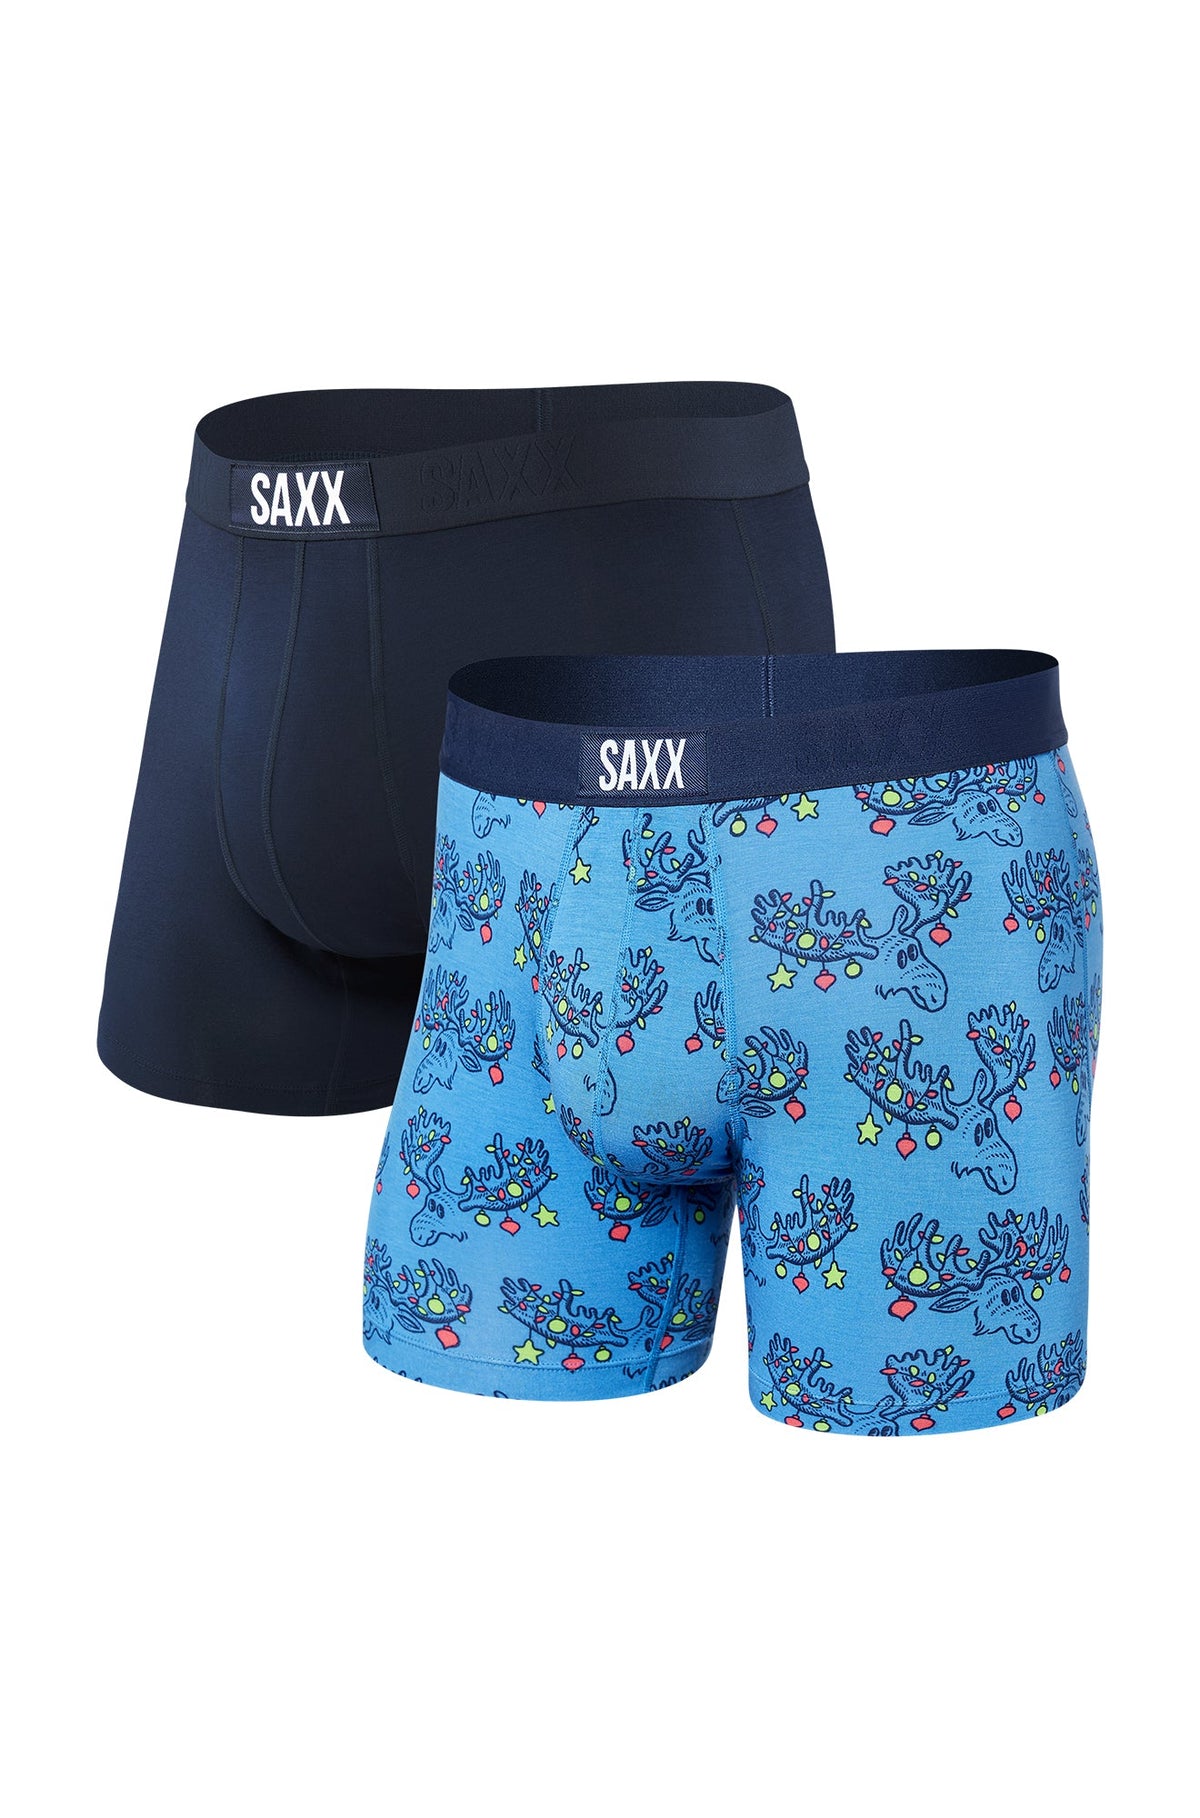 Sous-vêtement/boxer pour homme par Saxx | SXPP2V MON | Machemise.ca, vêtements mode pour hommes